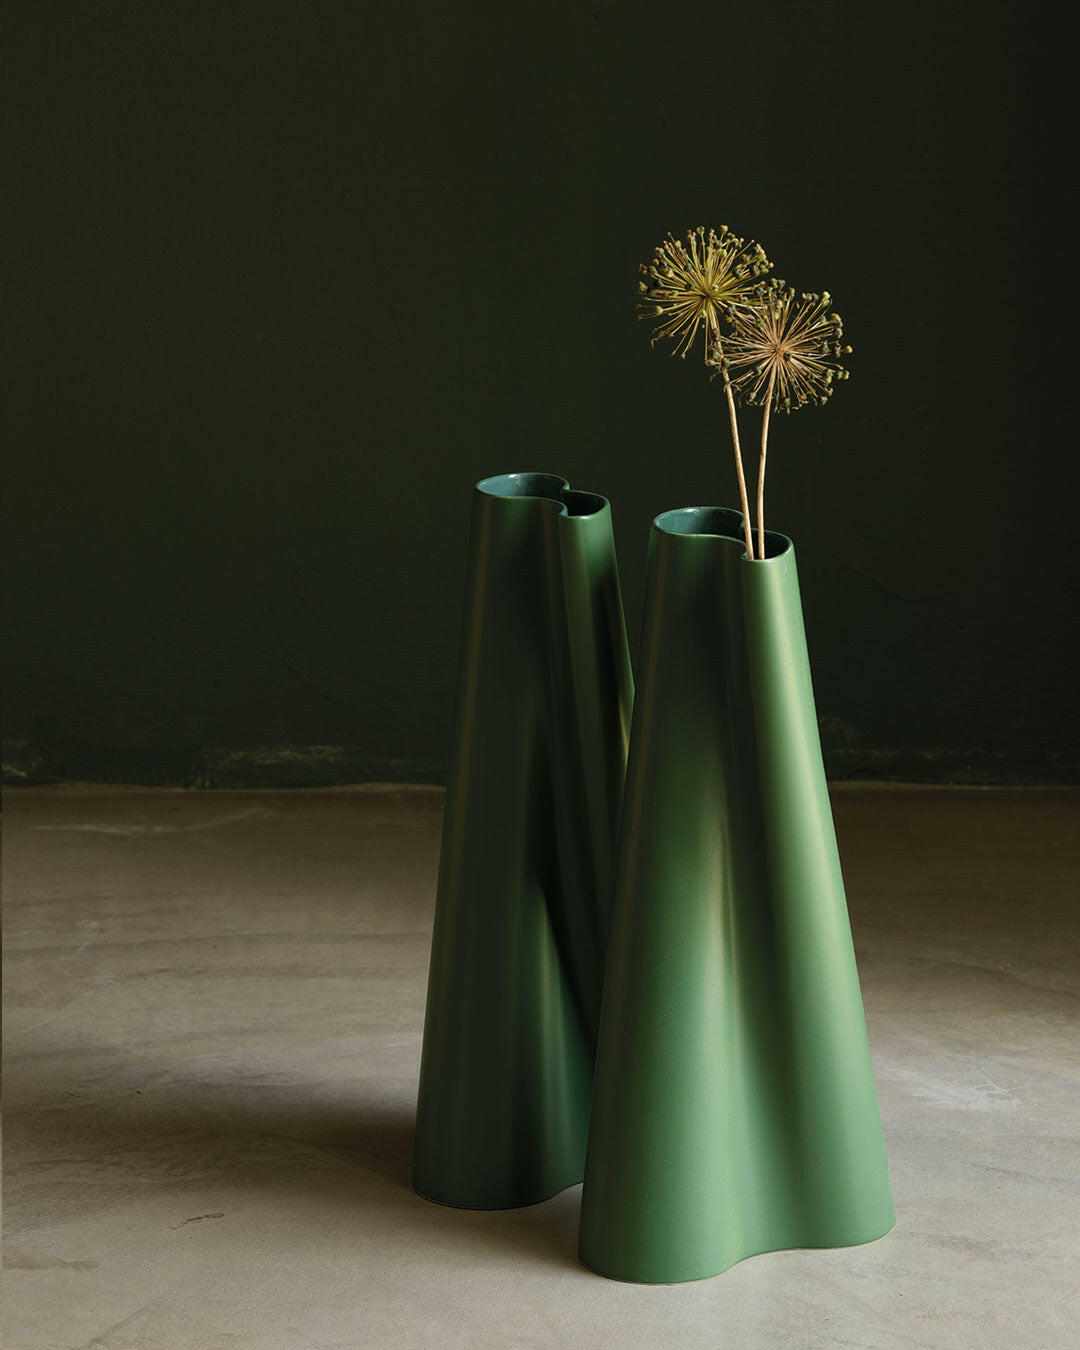 Vase vague - -MENT-Halo Concept